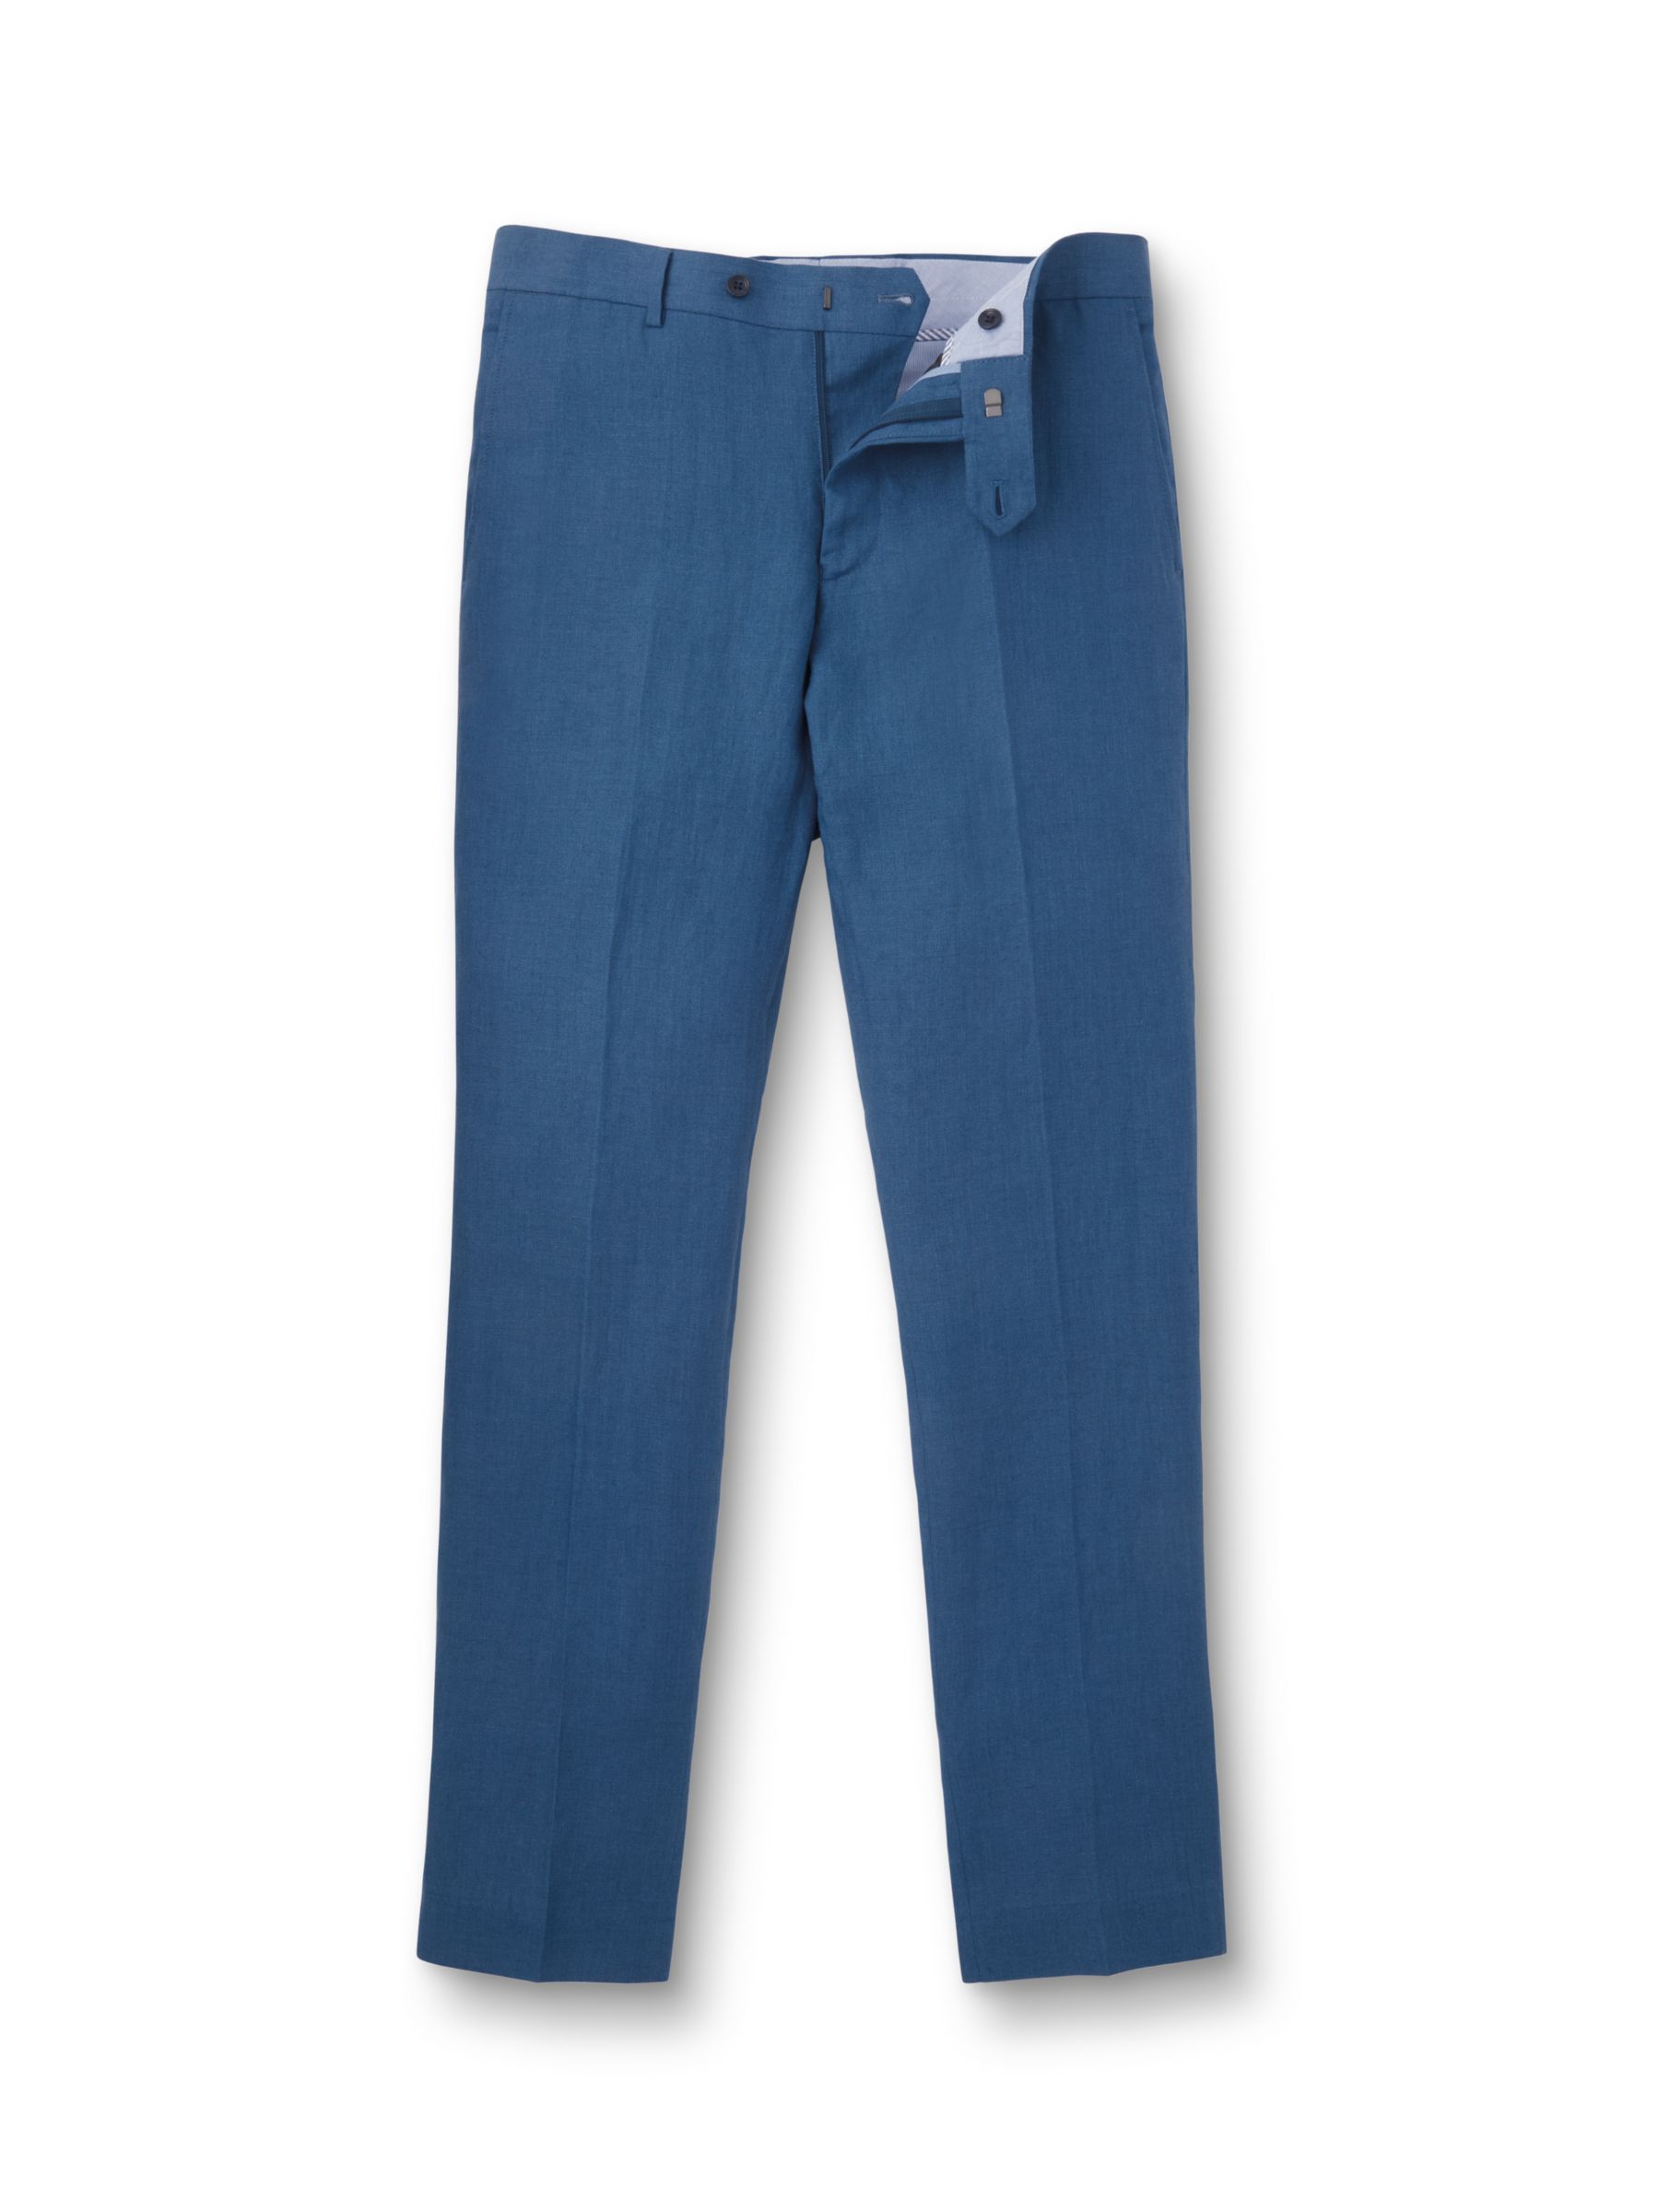 Charles Tyrwhitt Slim Fit Linen Trousers, Royal Blue, 34L